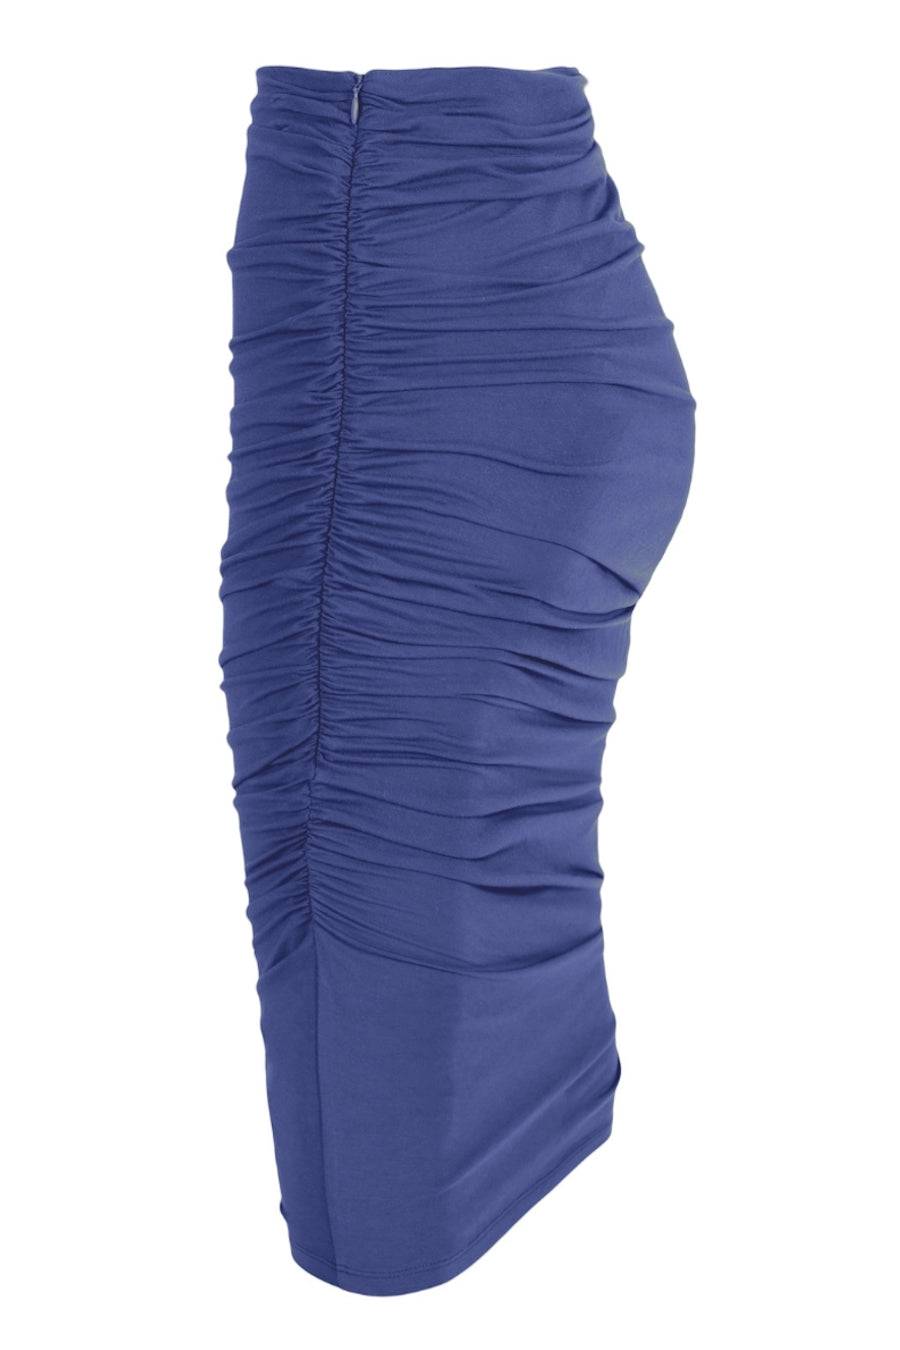 Embodycon™ Bamboo Shaping Skirt - Ocean Blue